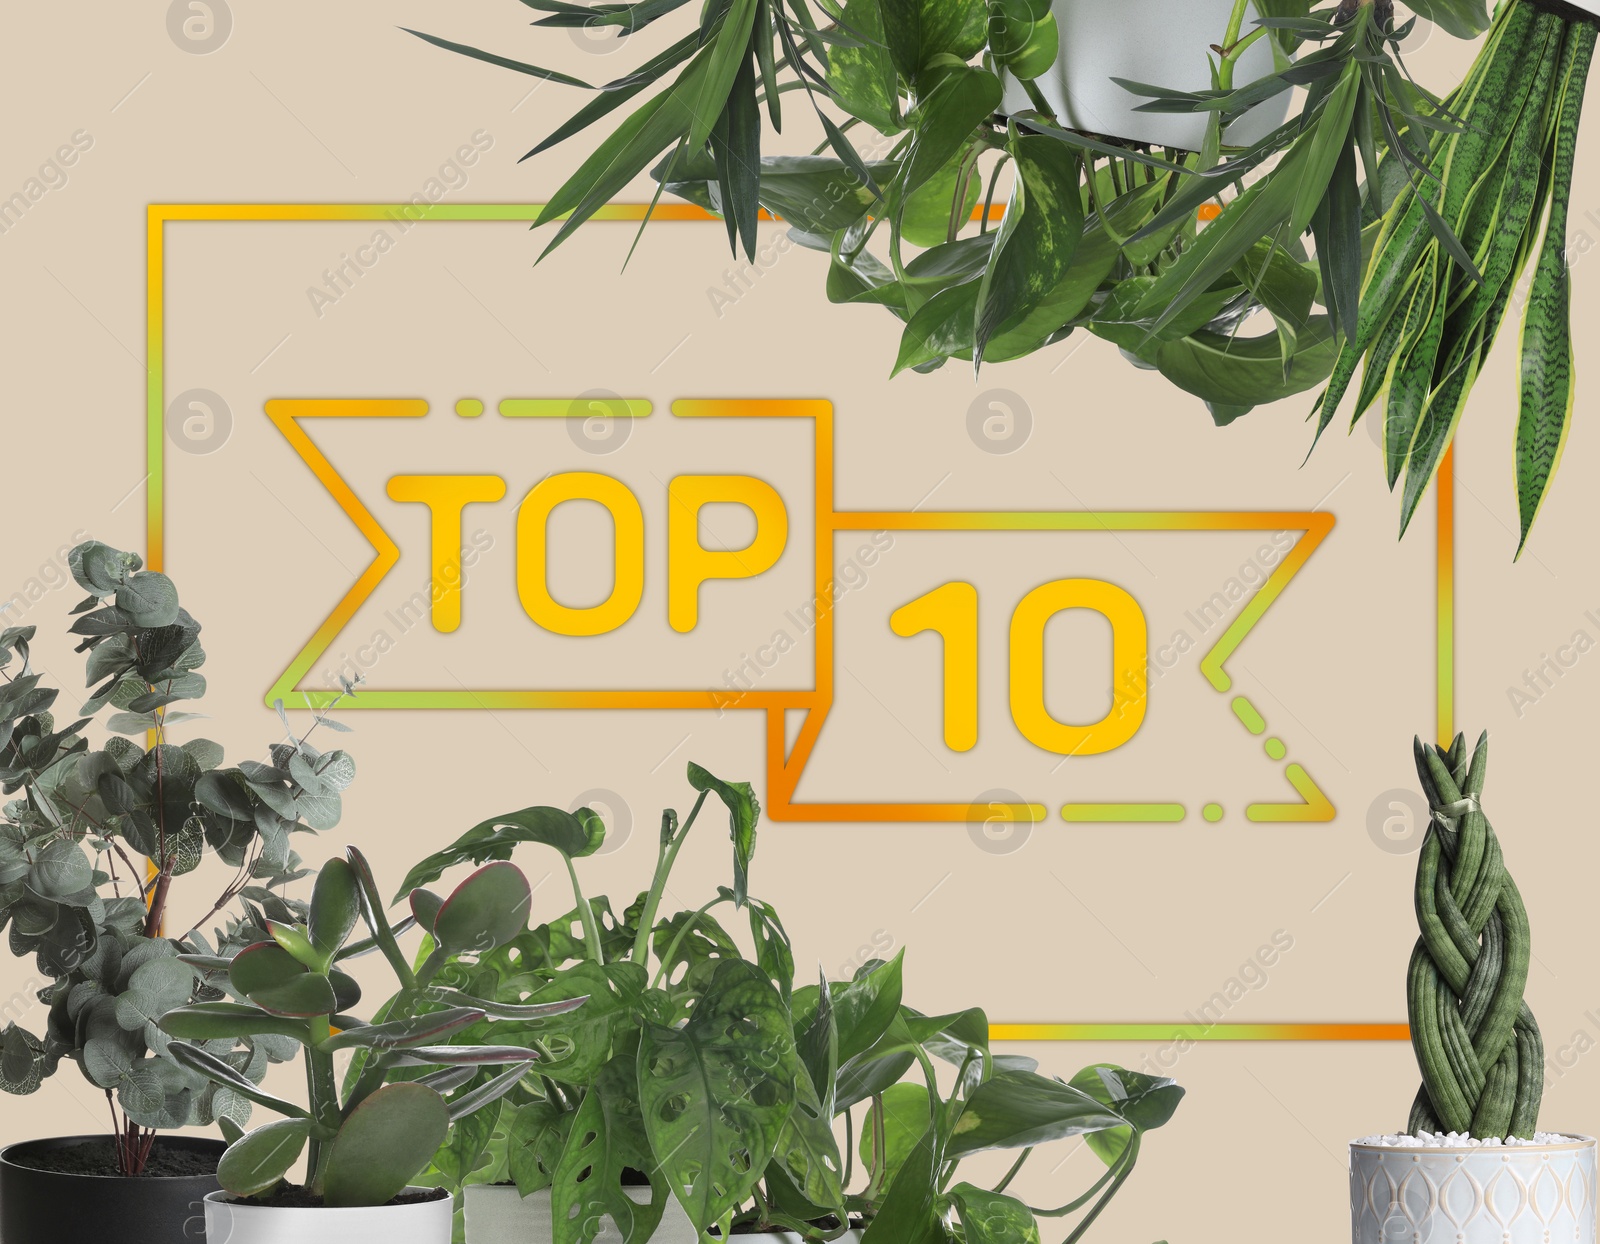 Image of Top ten list of houseplants on beige background